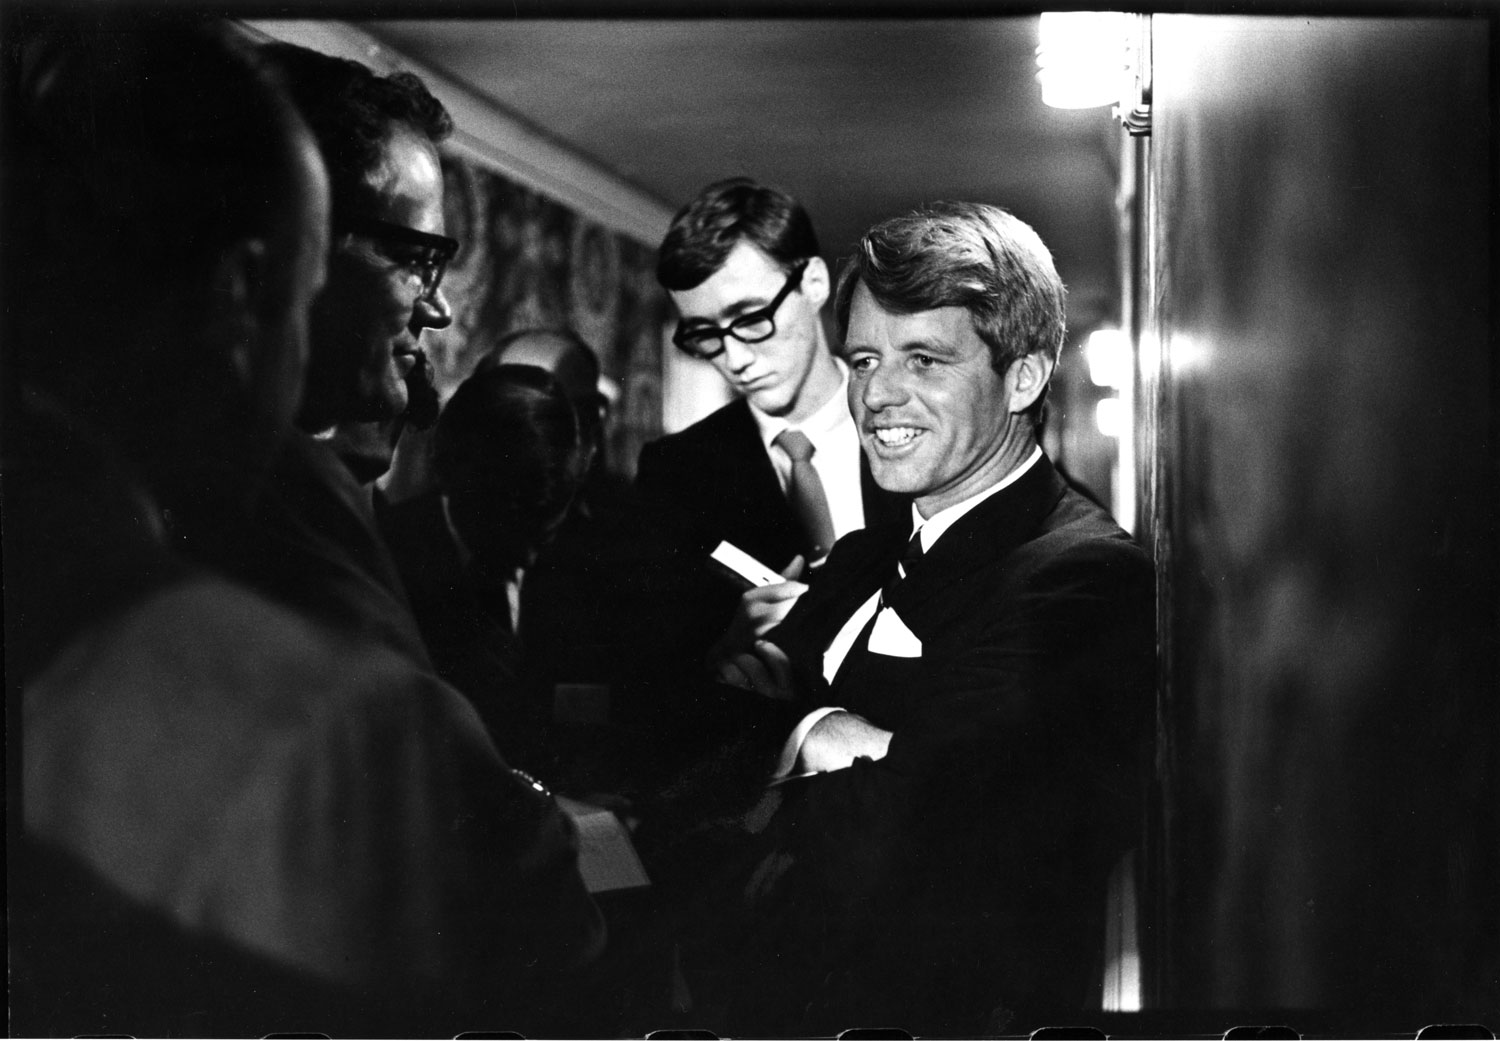 Sen. Robert Kennedy campaigns, June 1968.